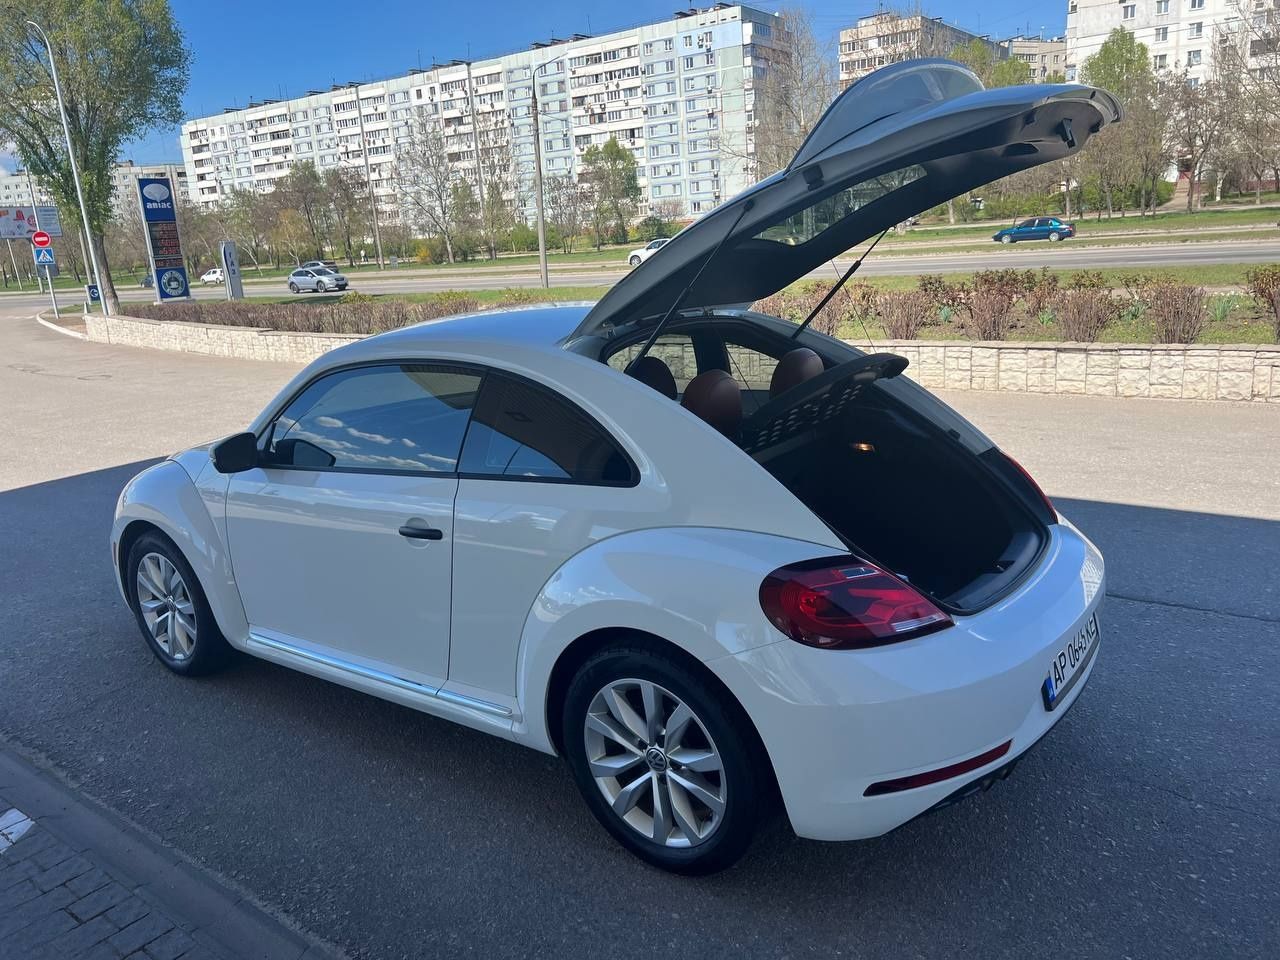 Продам Volkswagen Beetle